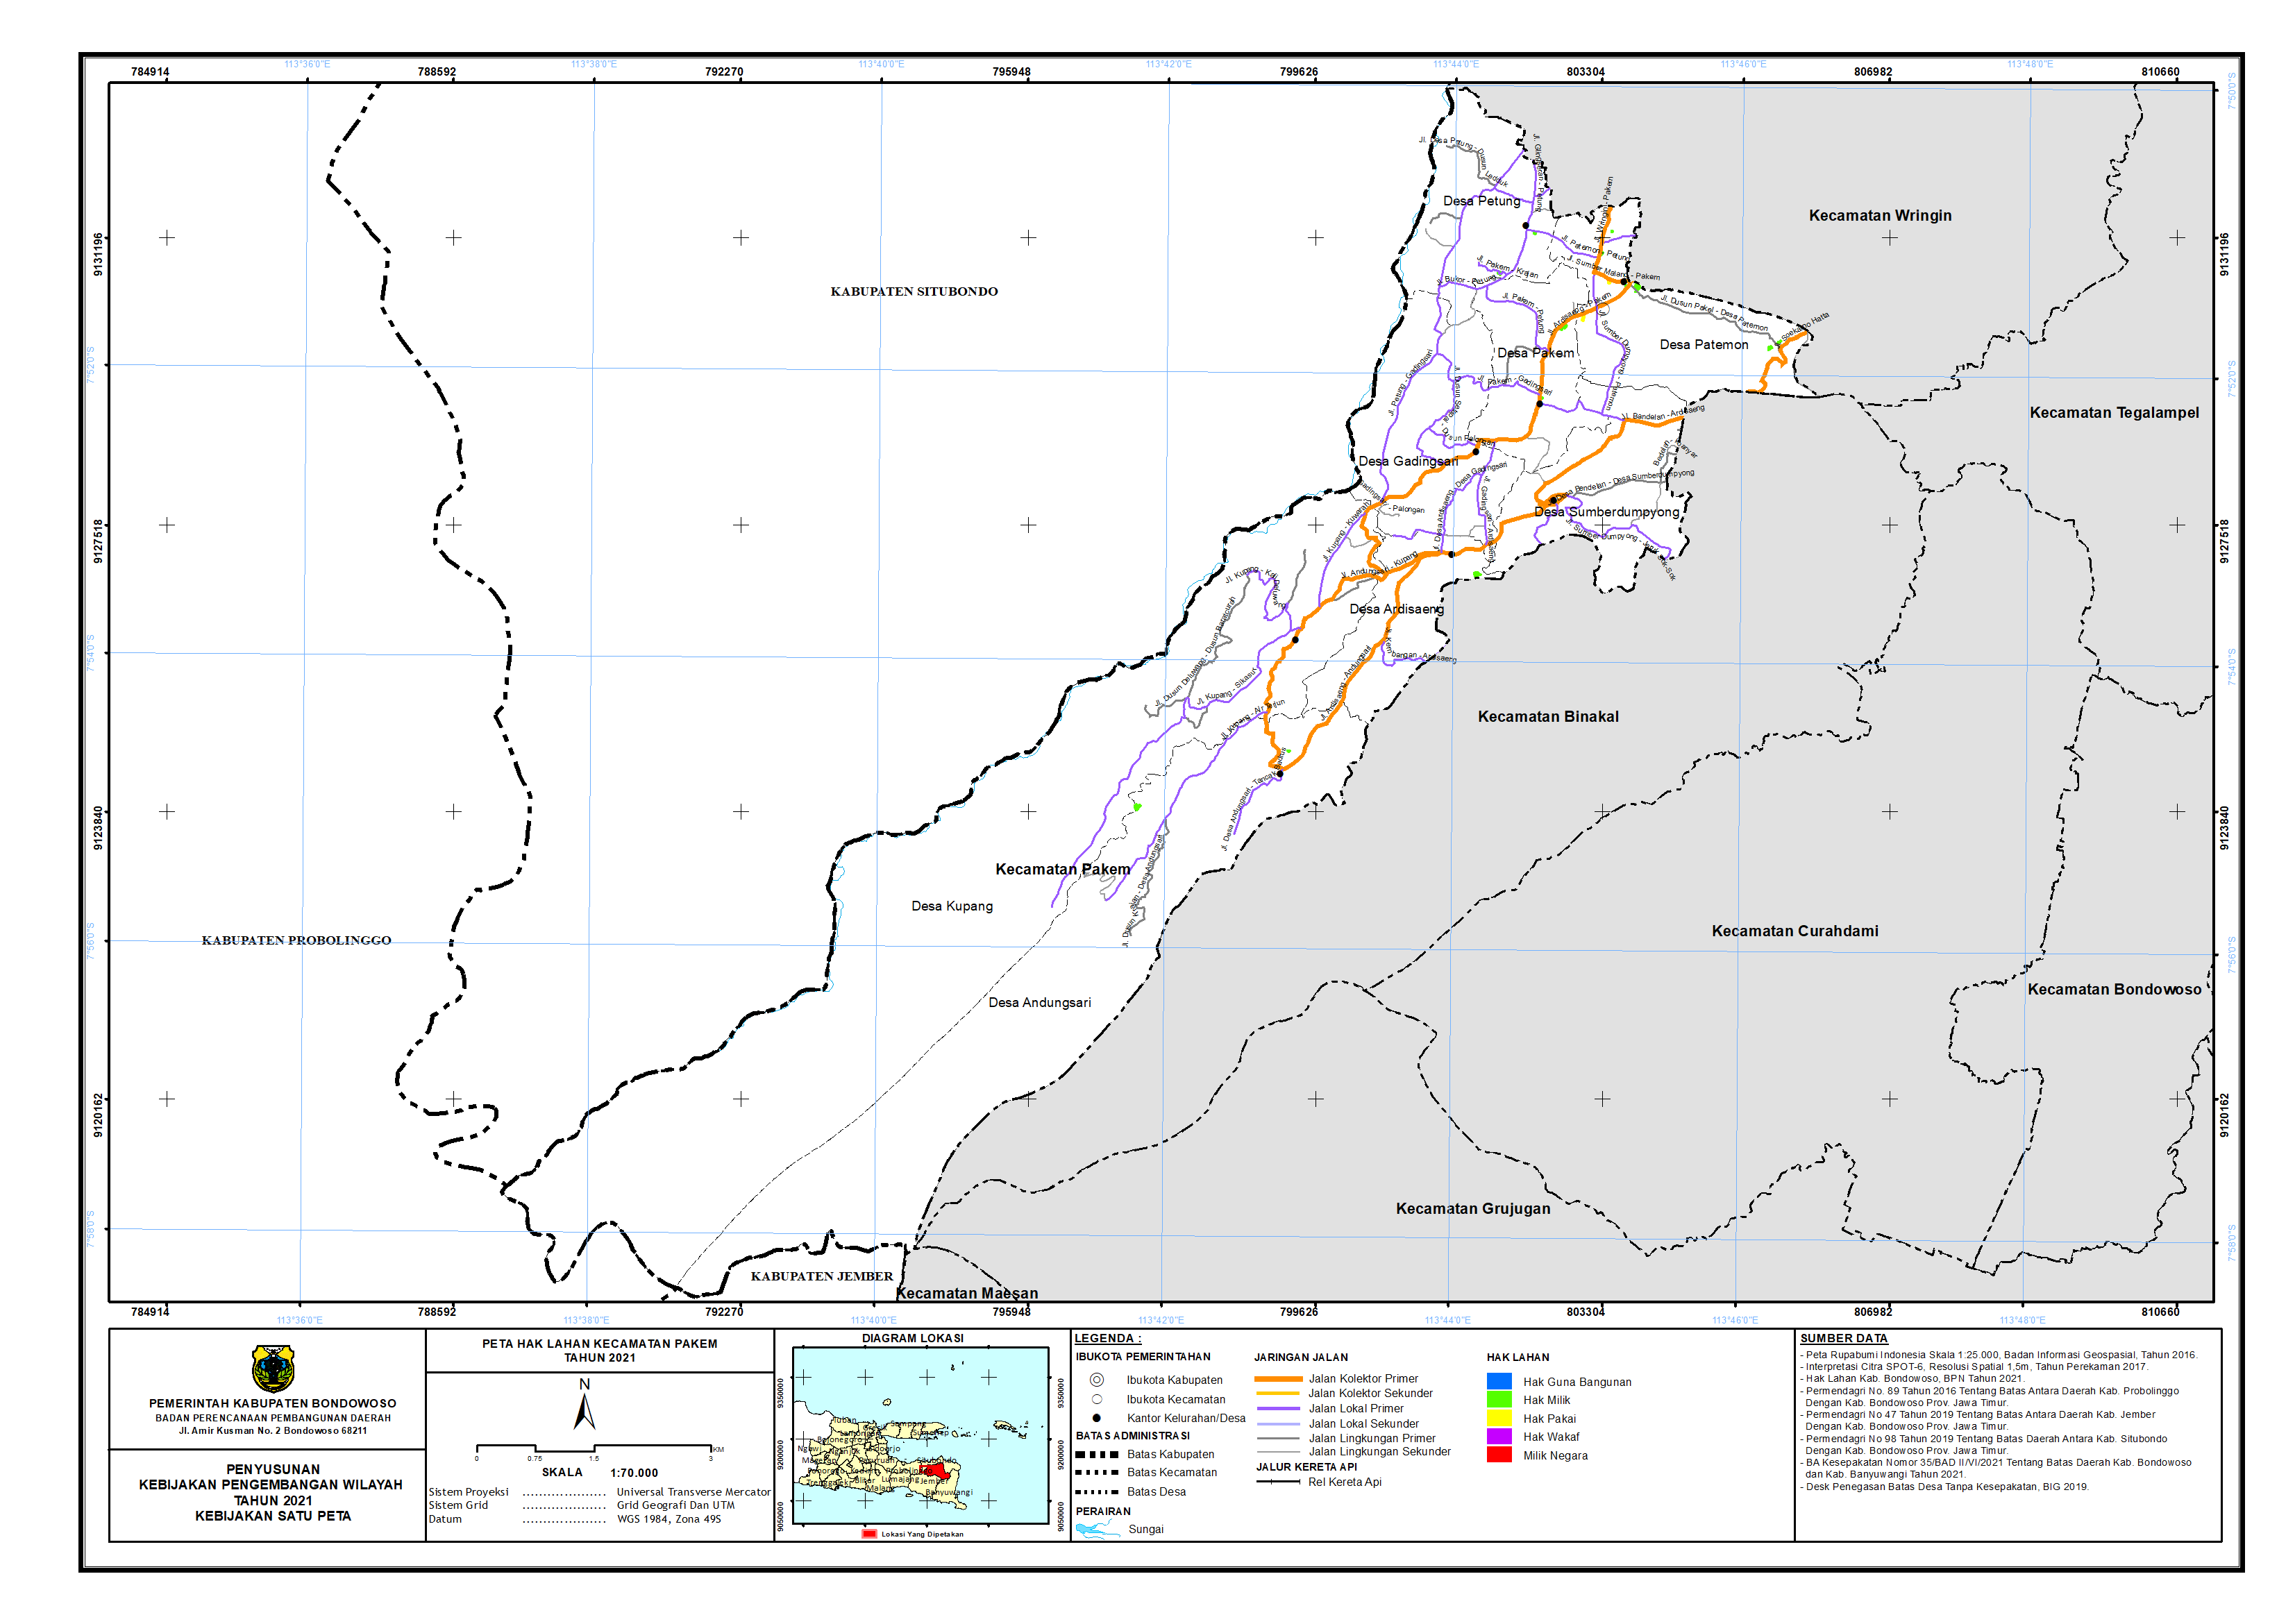 Peta Hak Lahan Kecamatan Pakem.png